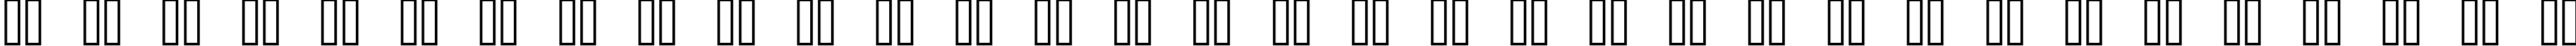 Пример написания русского алфавита шрифтом Samurai